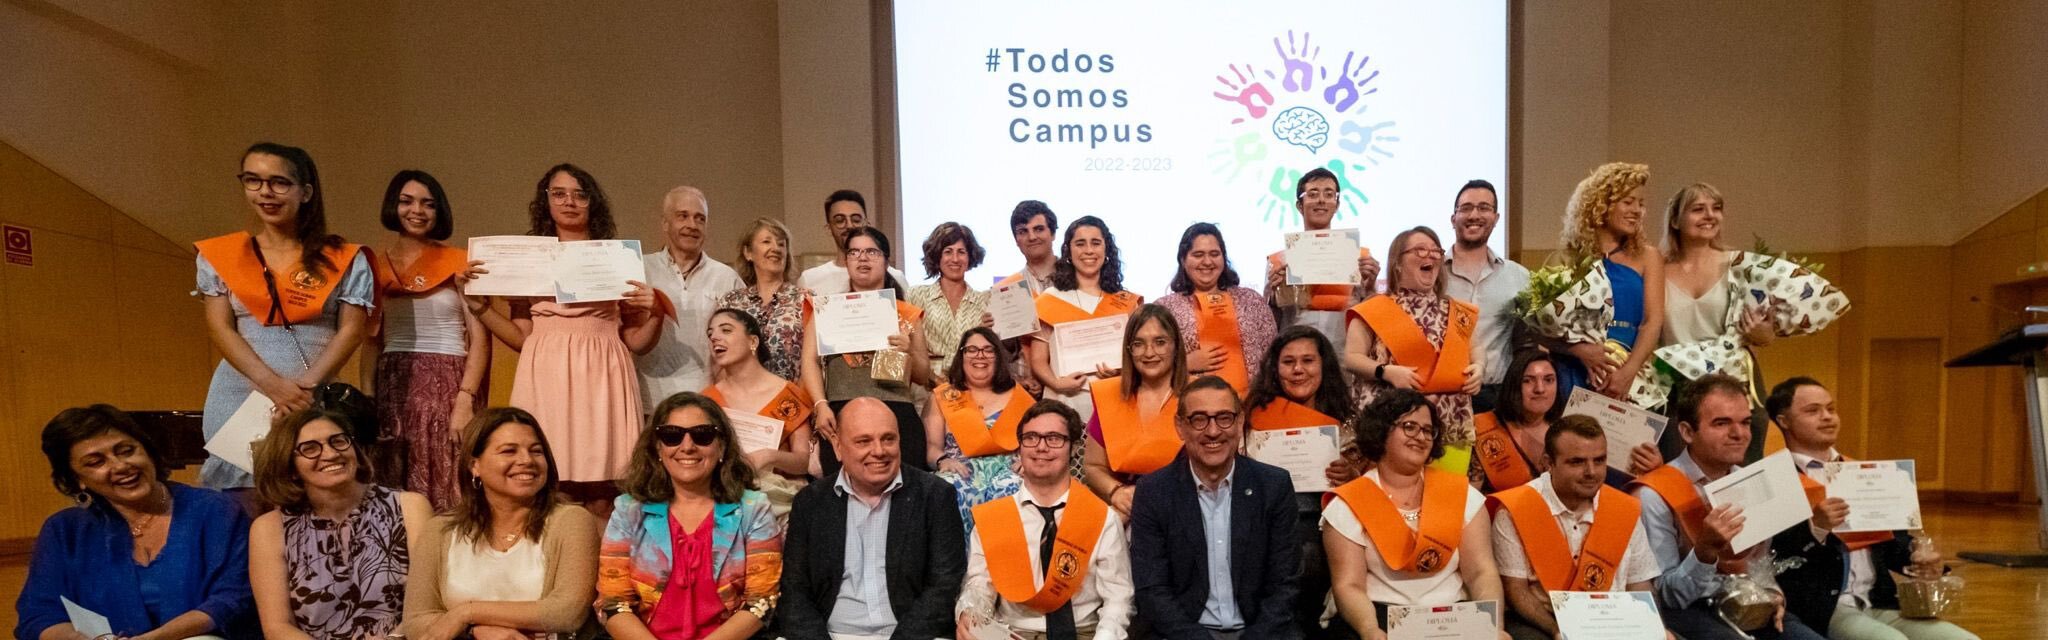 La Universidad de Murcia acoge la graduación de 'Todos somos campus'